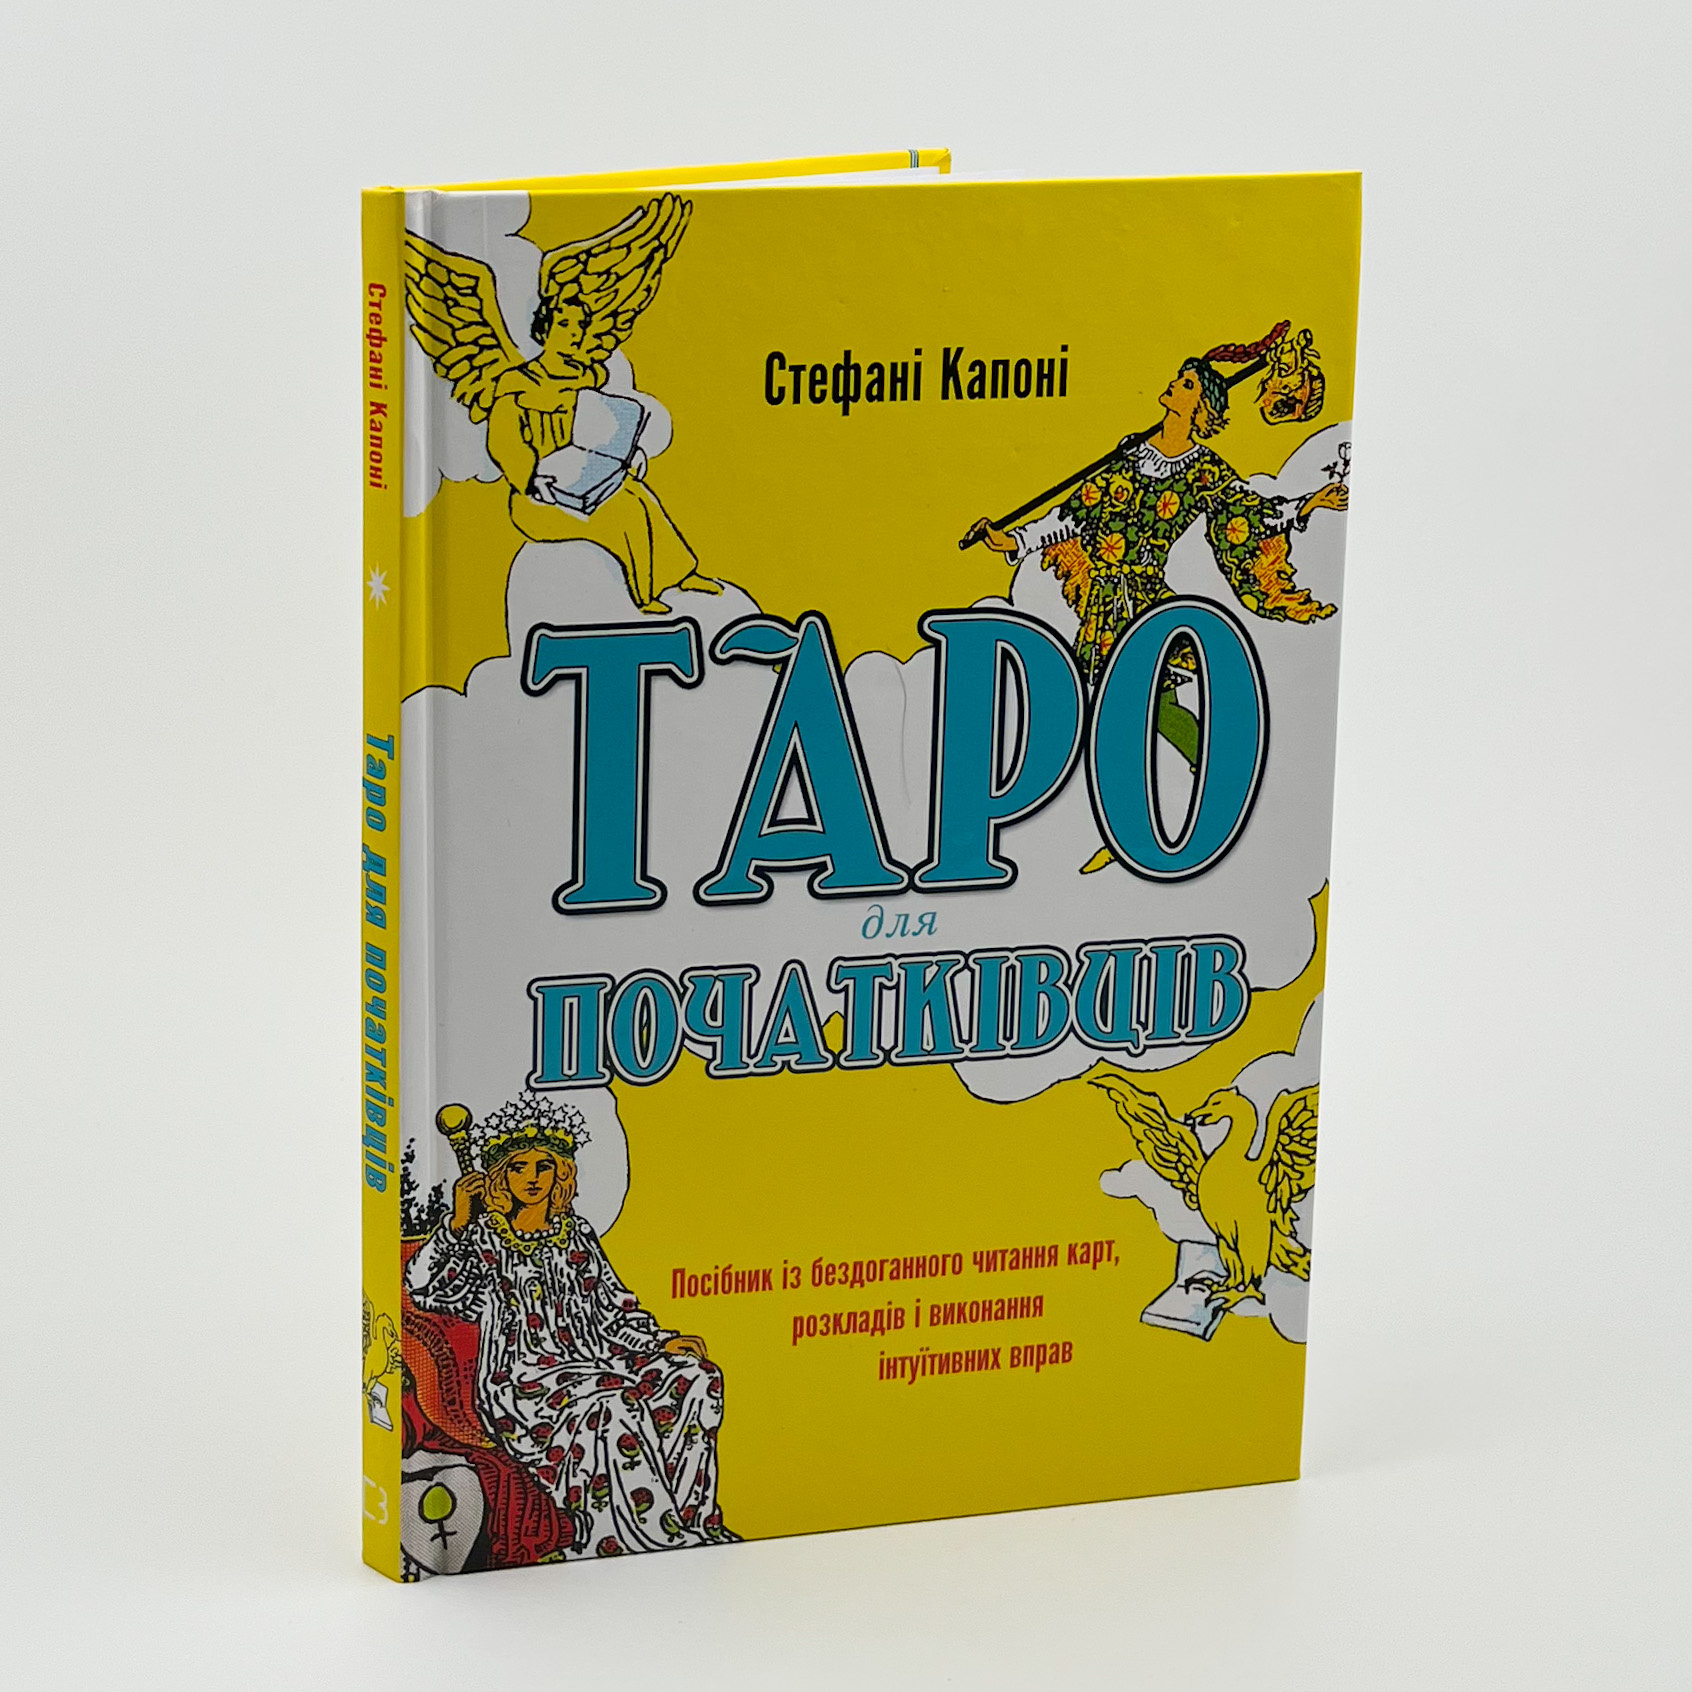 Таро для початківців. Посібник із бездоганного читання карт, розкладів і виконання інтуїтивних вправ. Автор — Стефані Капоні. 